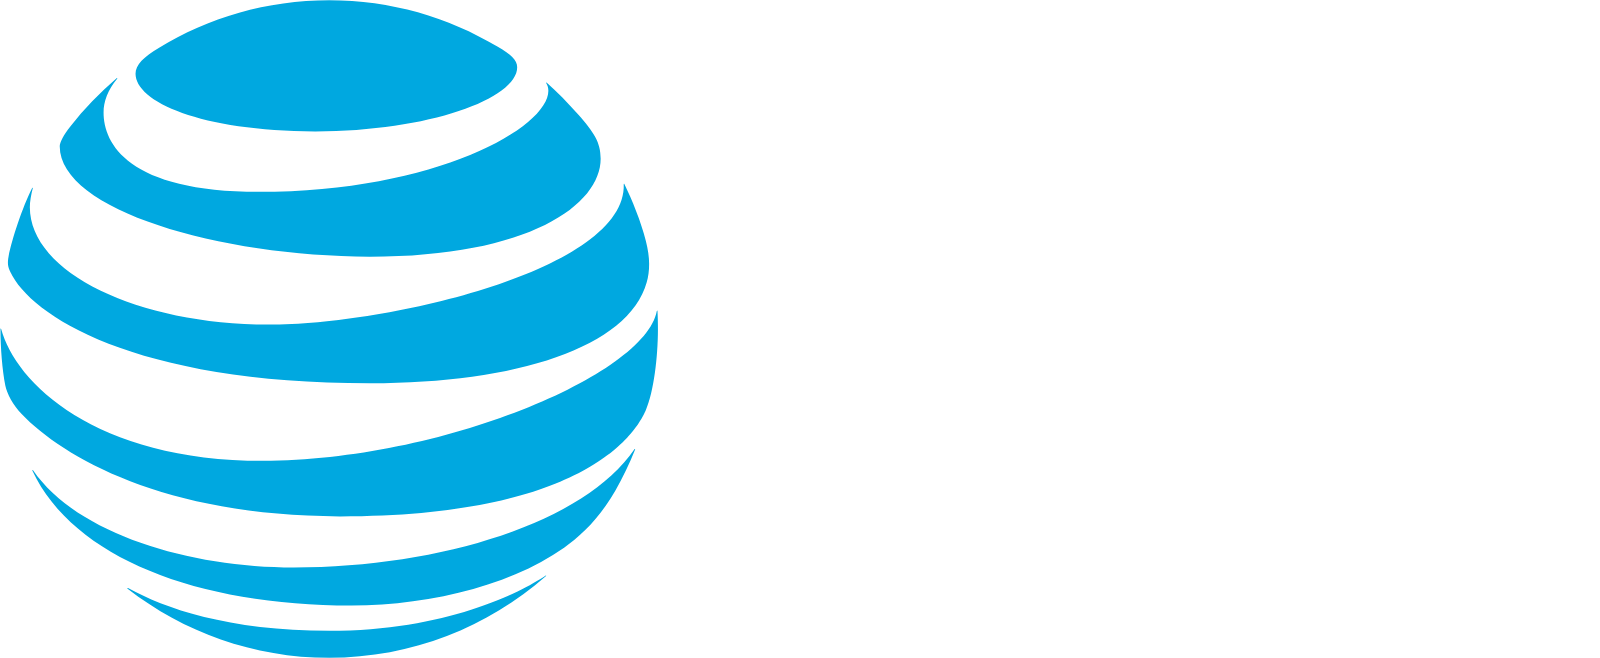 AT&T logo grand pour les fonds sombres (PNG transparent)